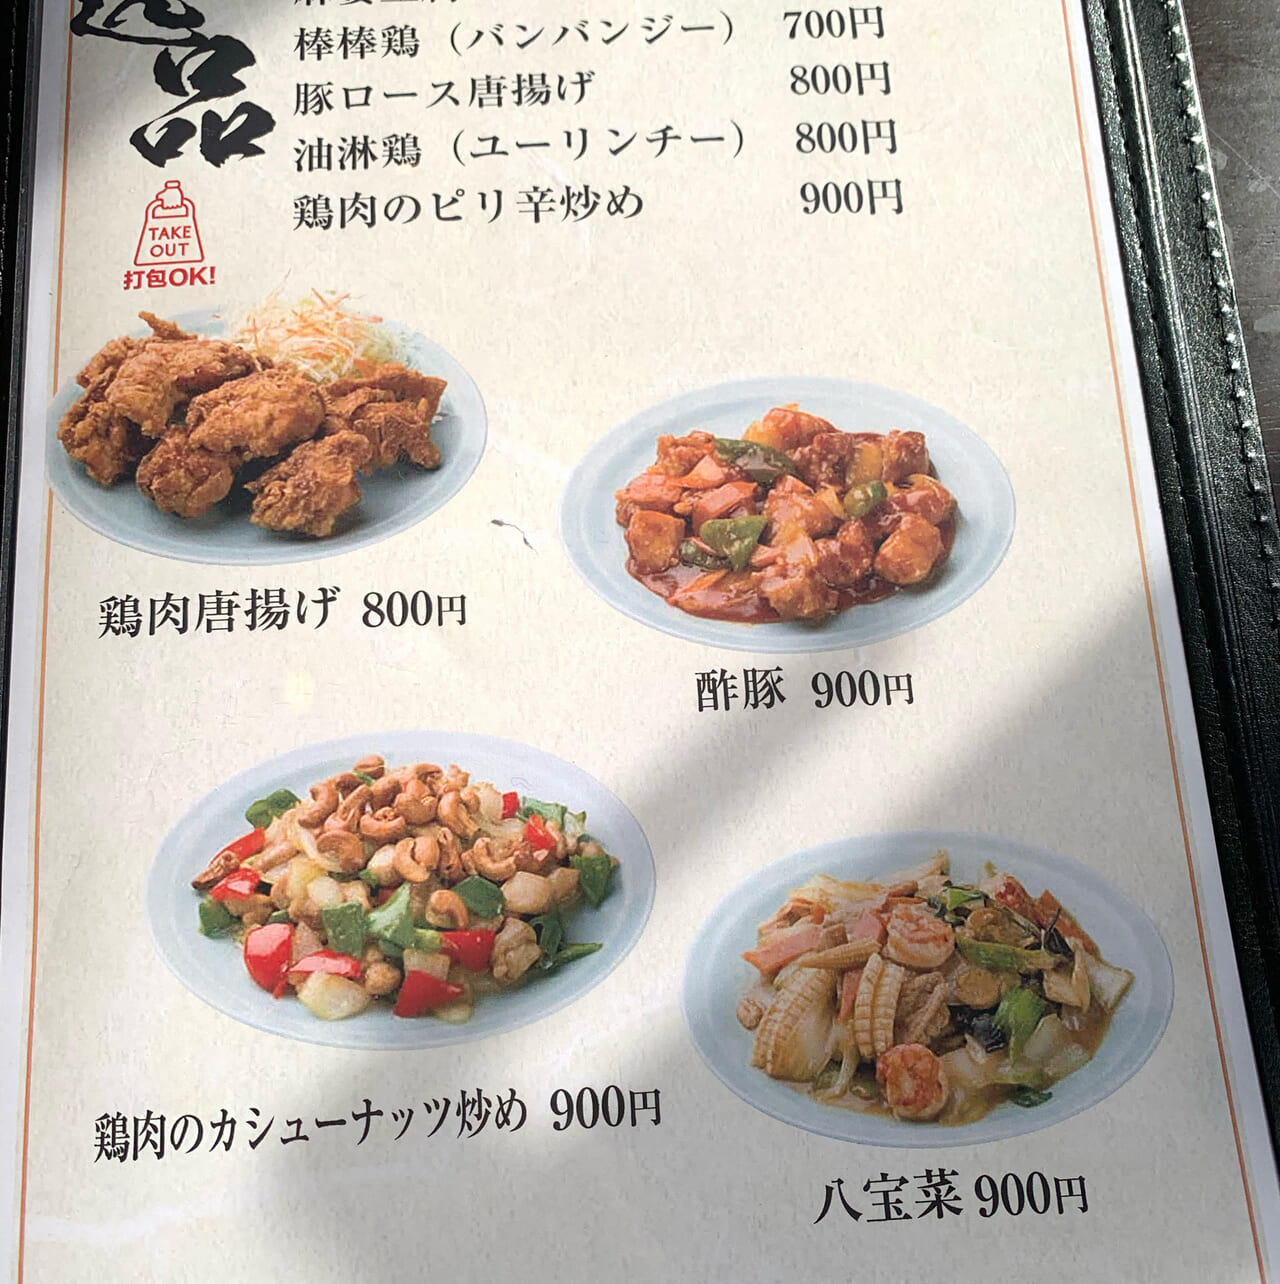 東村の中華料理屋シルクロードが店名を「潯陽」と名前を変えてオープンしています!!